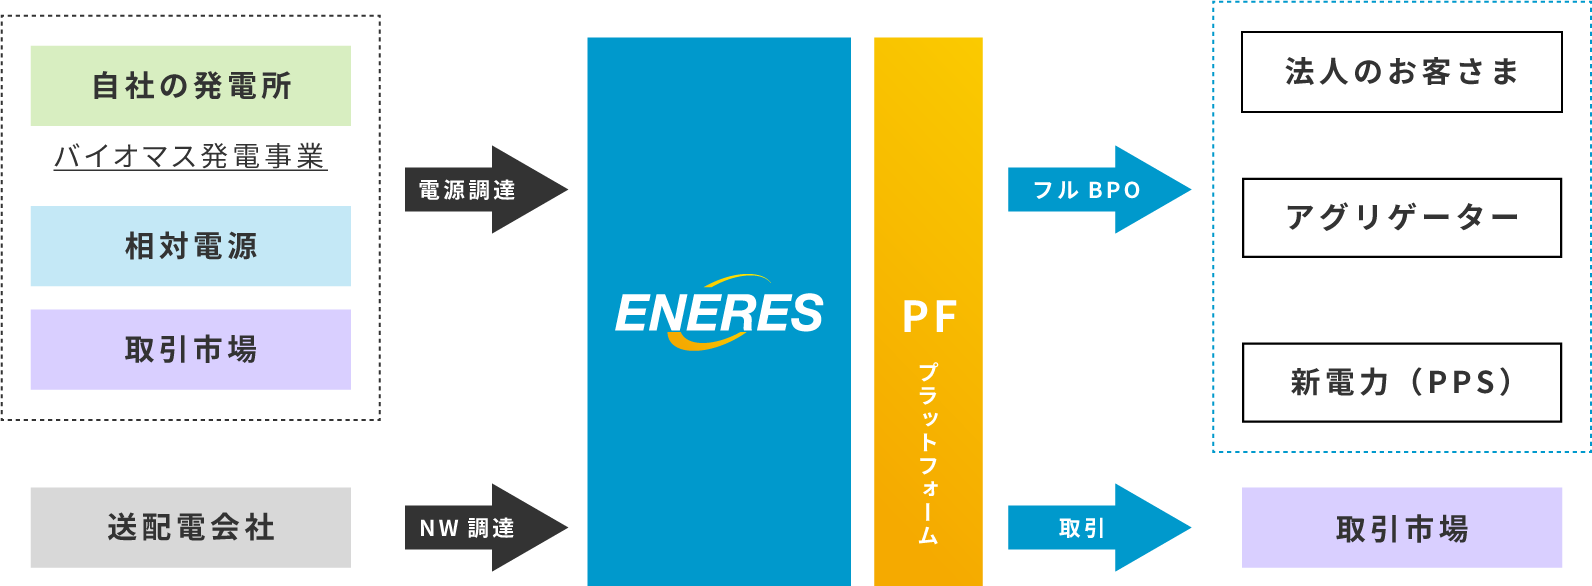 ENERES PLATFORM BUSINESS MODEL